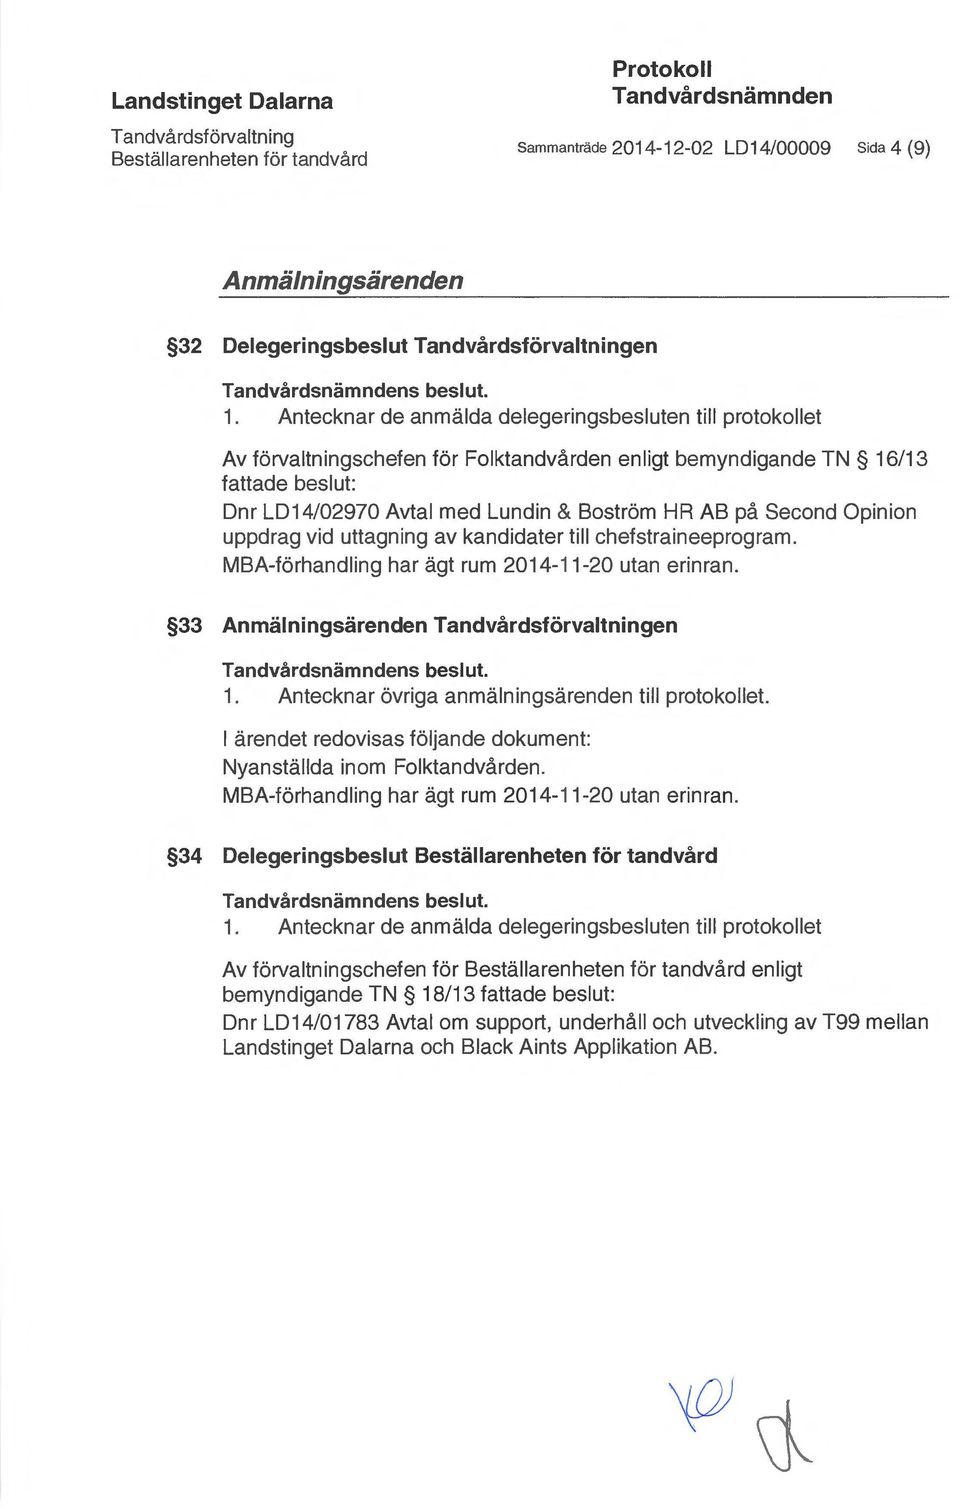 Antecknar de anmälda delegeringsbesluten till protokollet Av förvaltningschefen för Folktandvården enligt bemyndigande TN 16/13 fattade beslut: Dnr LD14/02970 Avtal med Lundin & Boström HR AB på